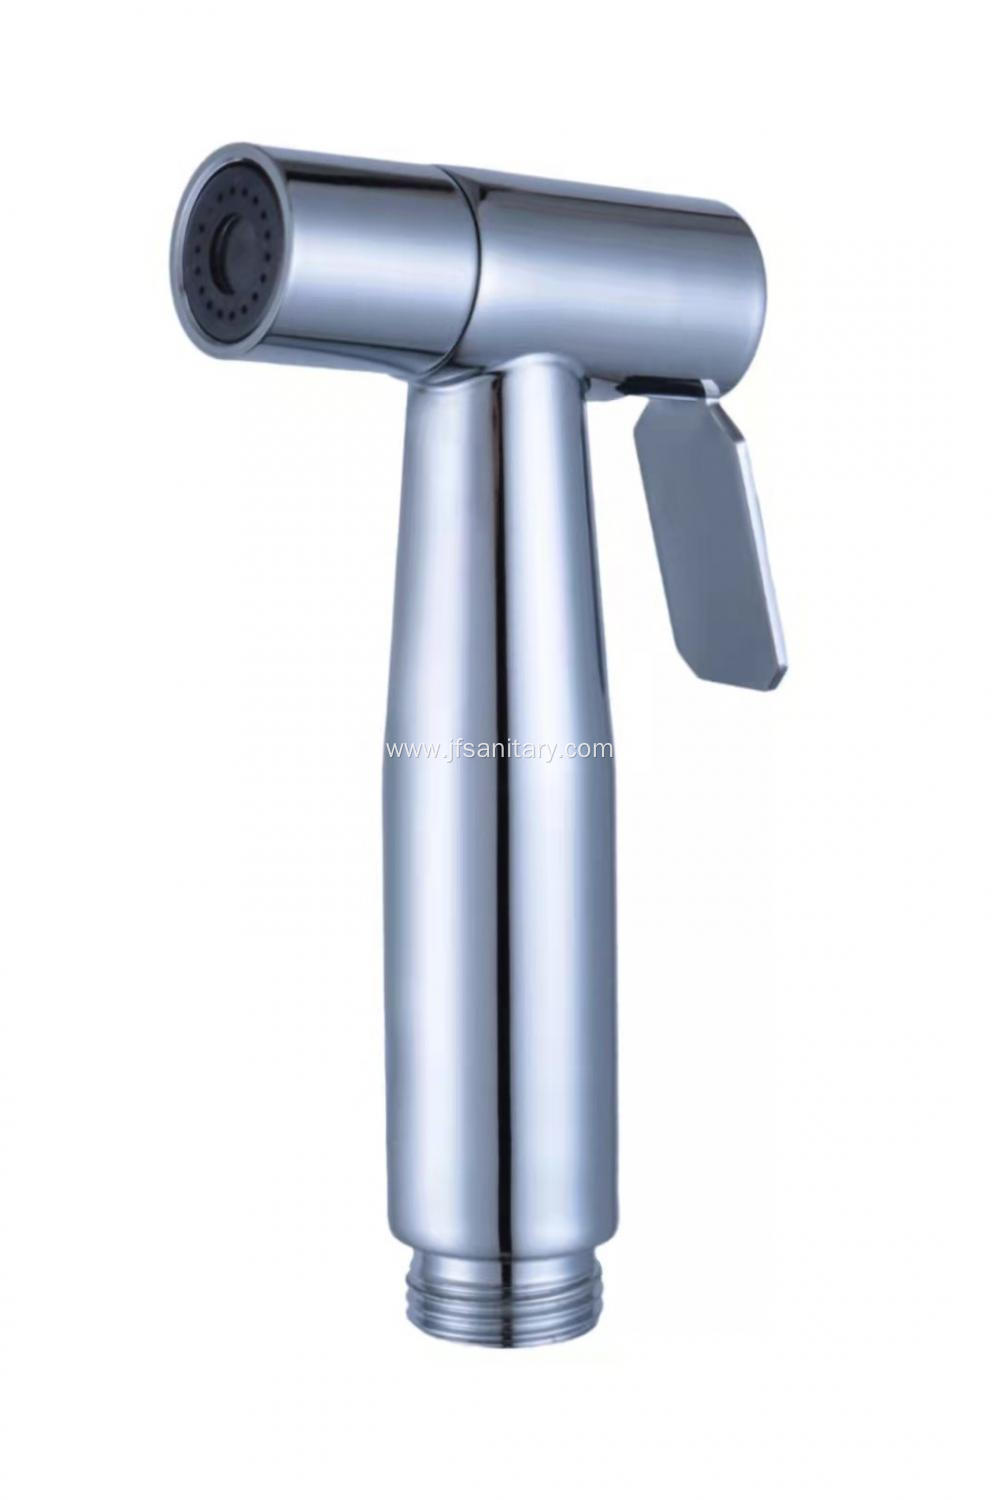 Stainless Steel Chrome Plated Handheld Shower Bidet Sprayer